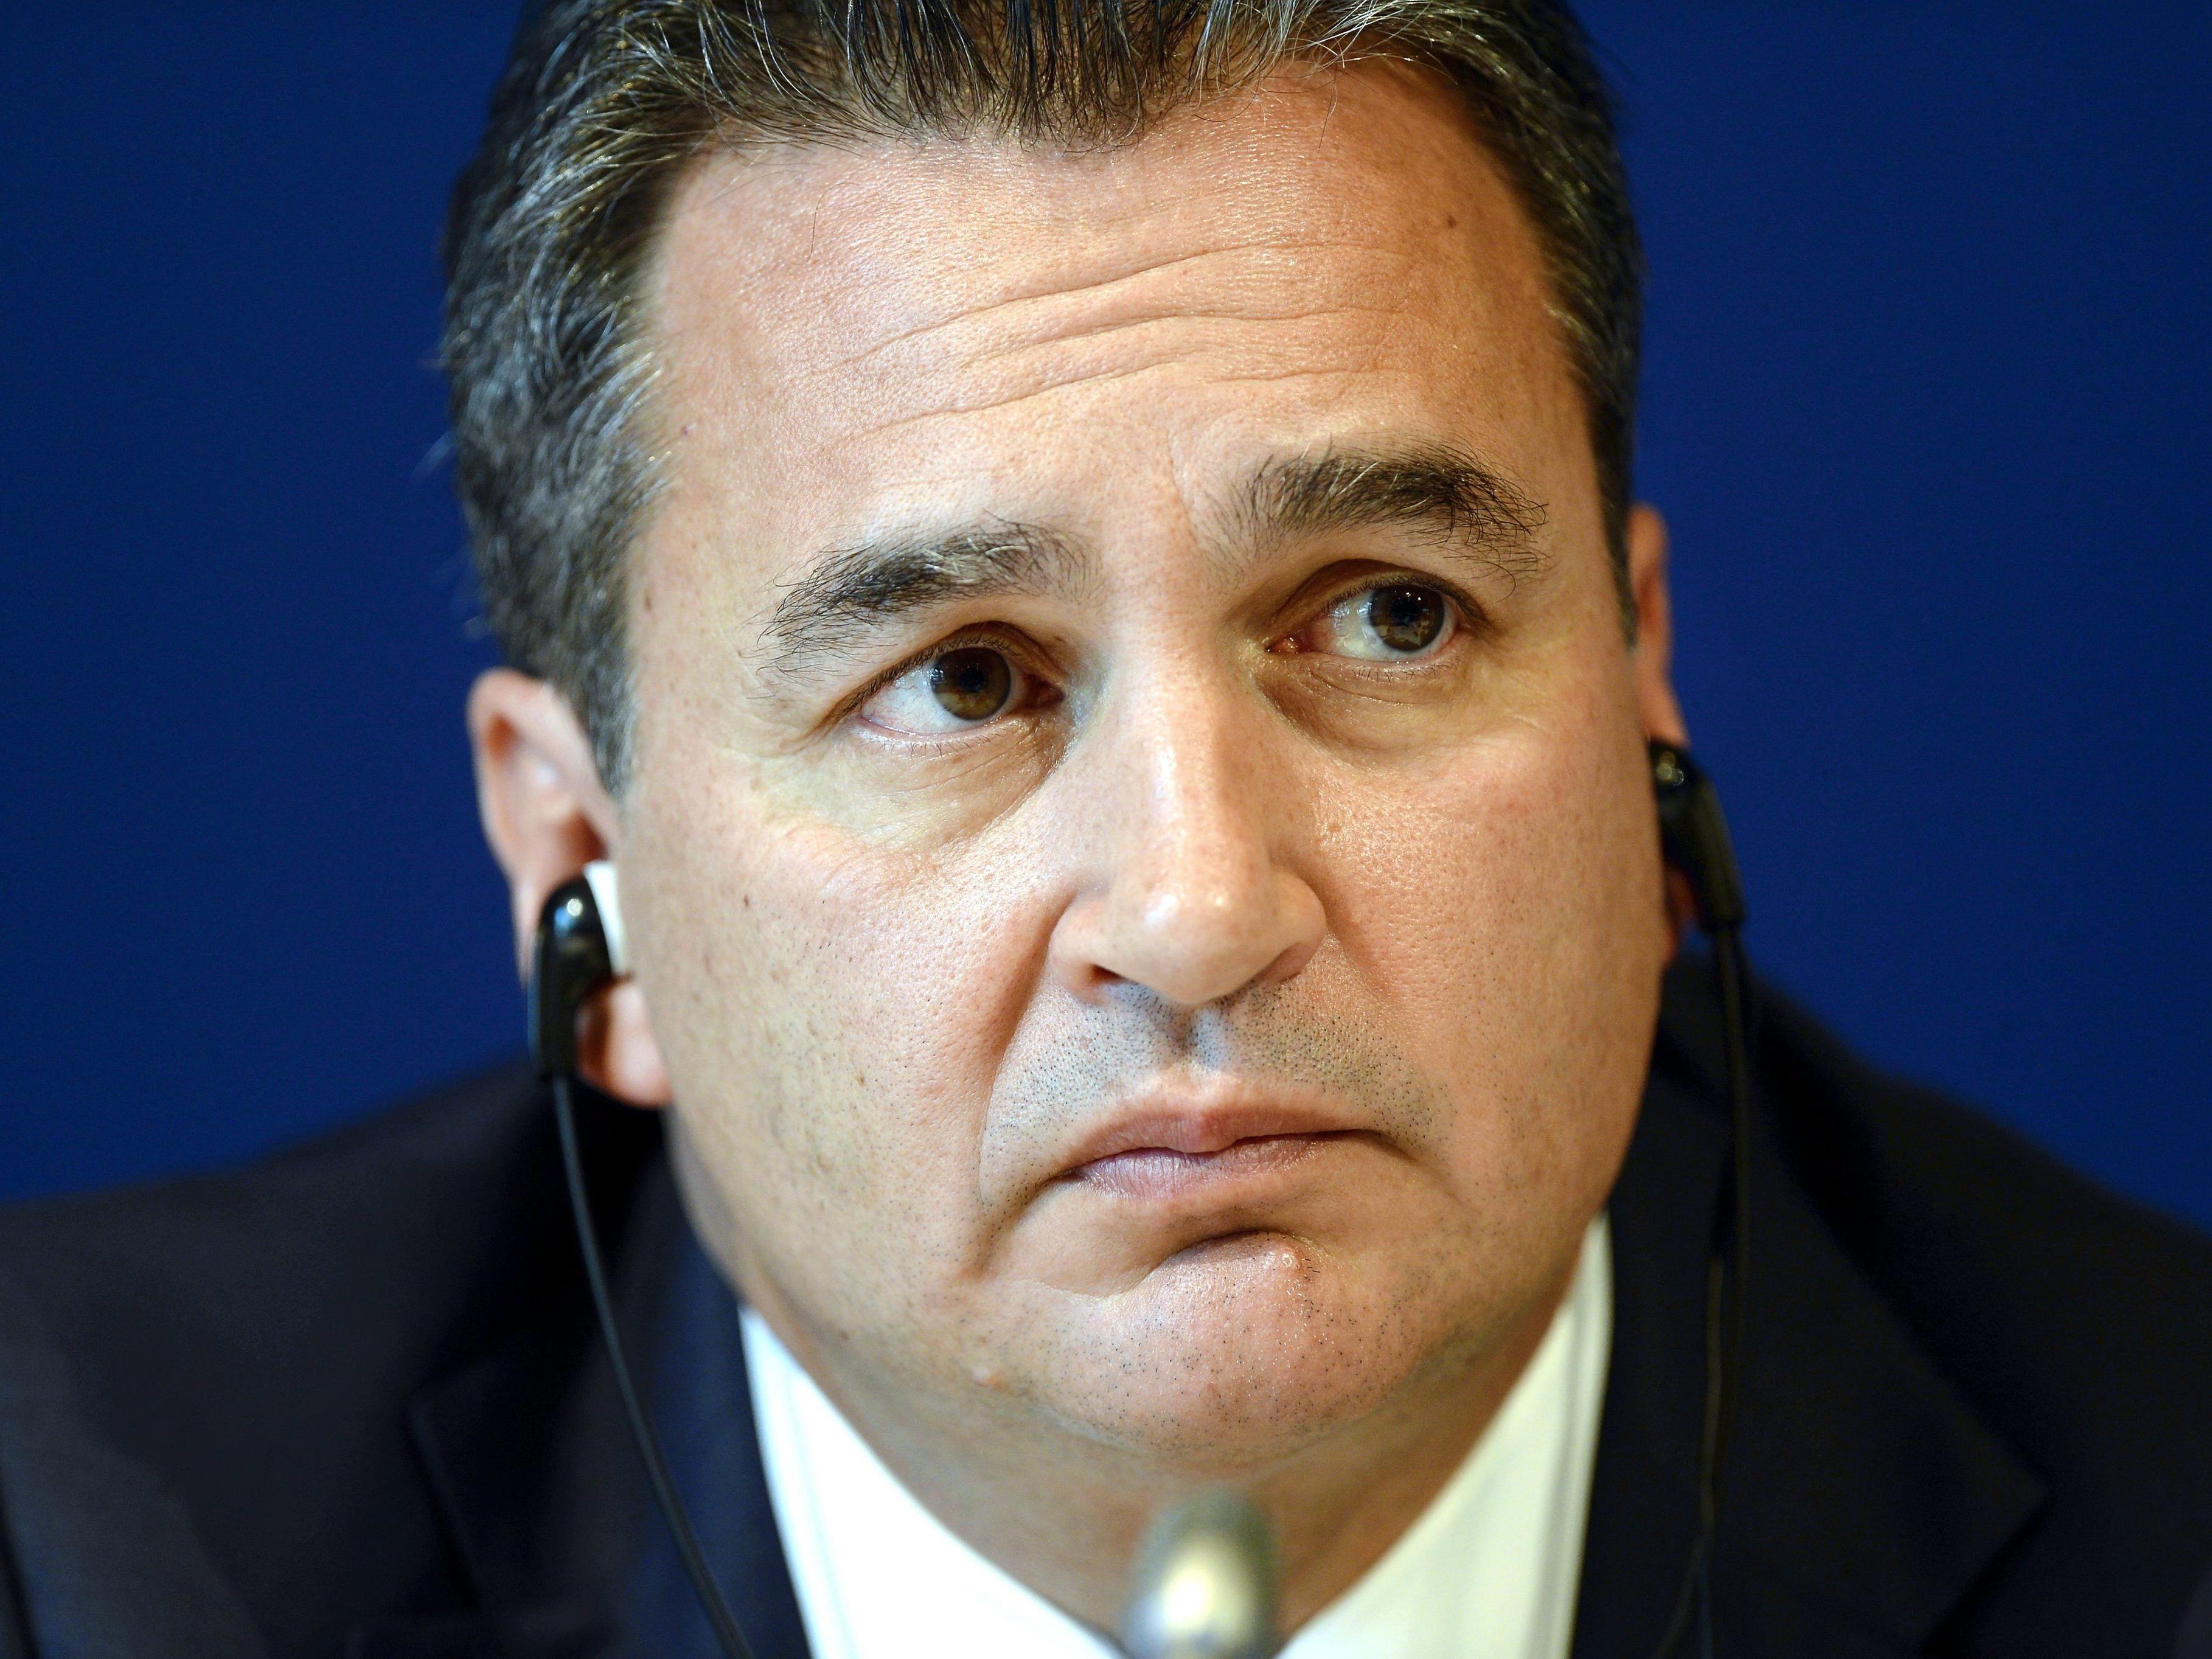 Michael Garcia widerspricht öffentlich dem präsentierten Gutachten der FIFA